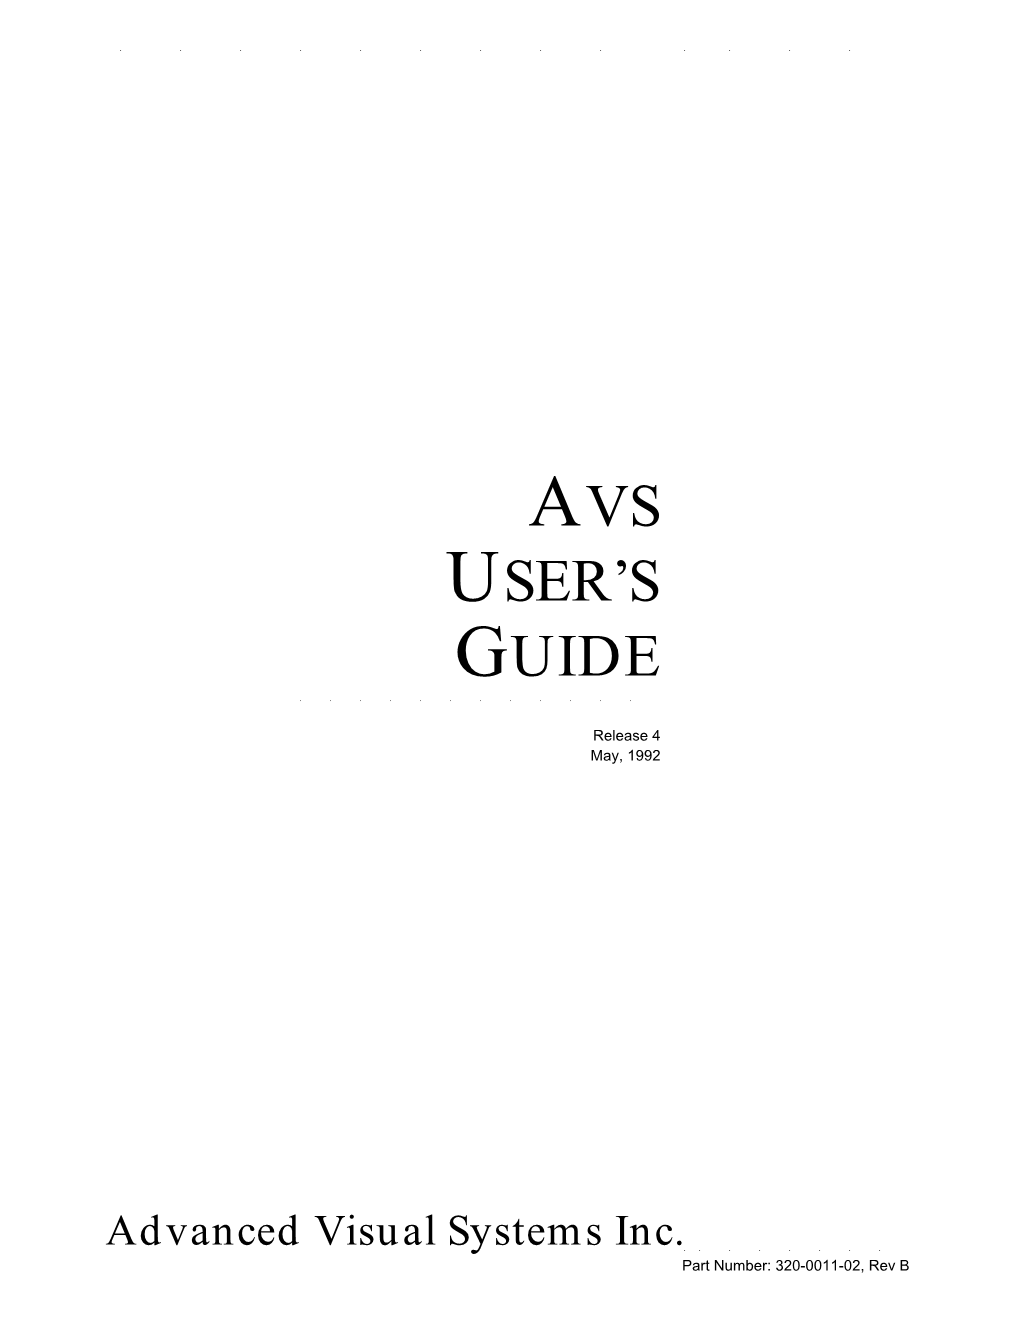 Avs User's Guide